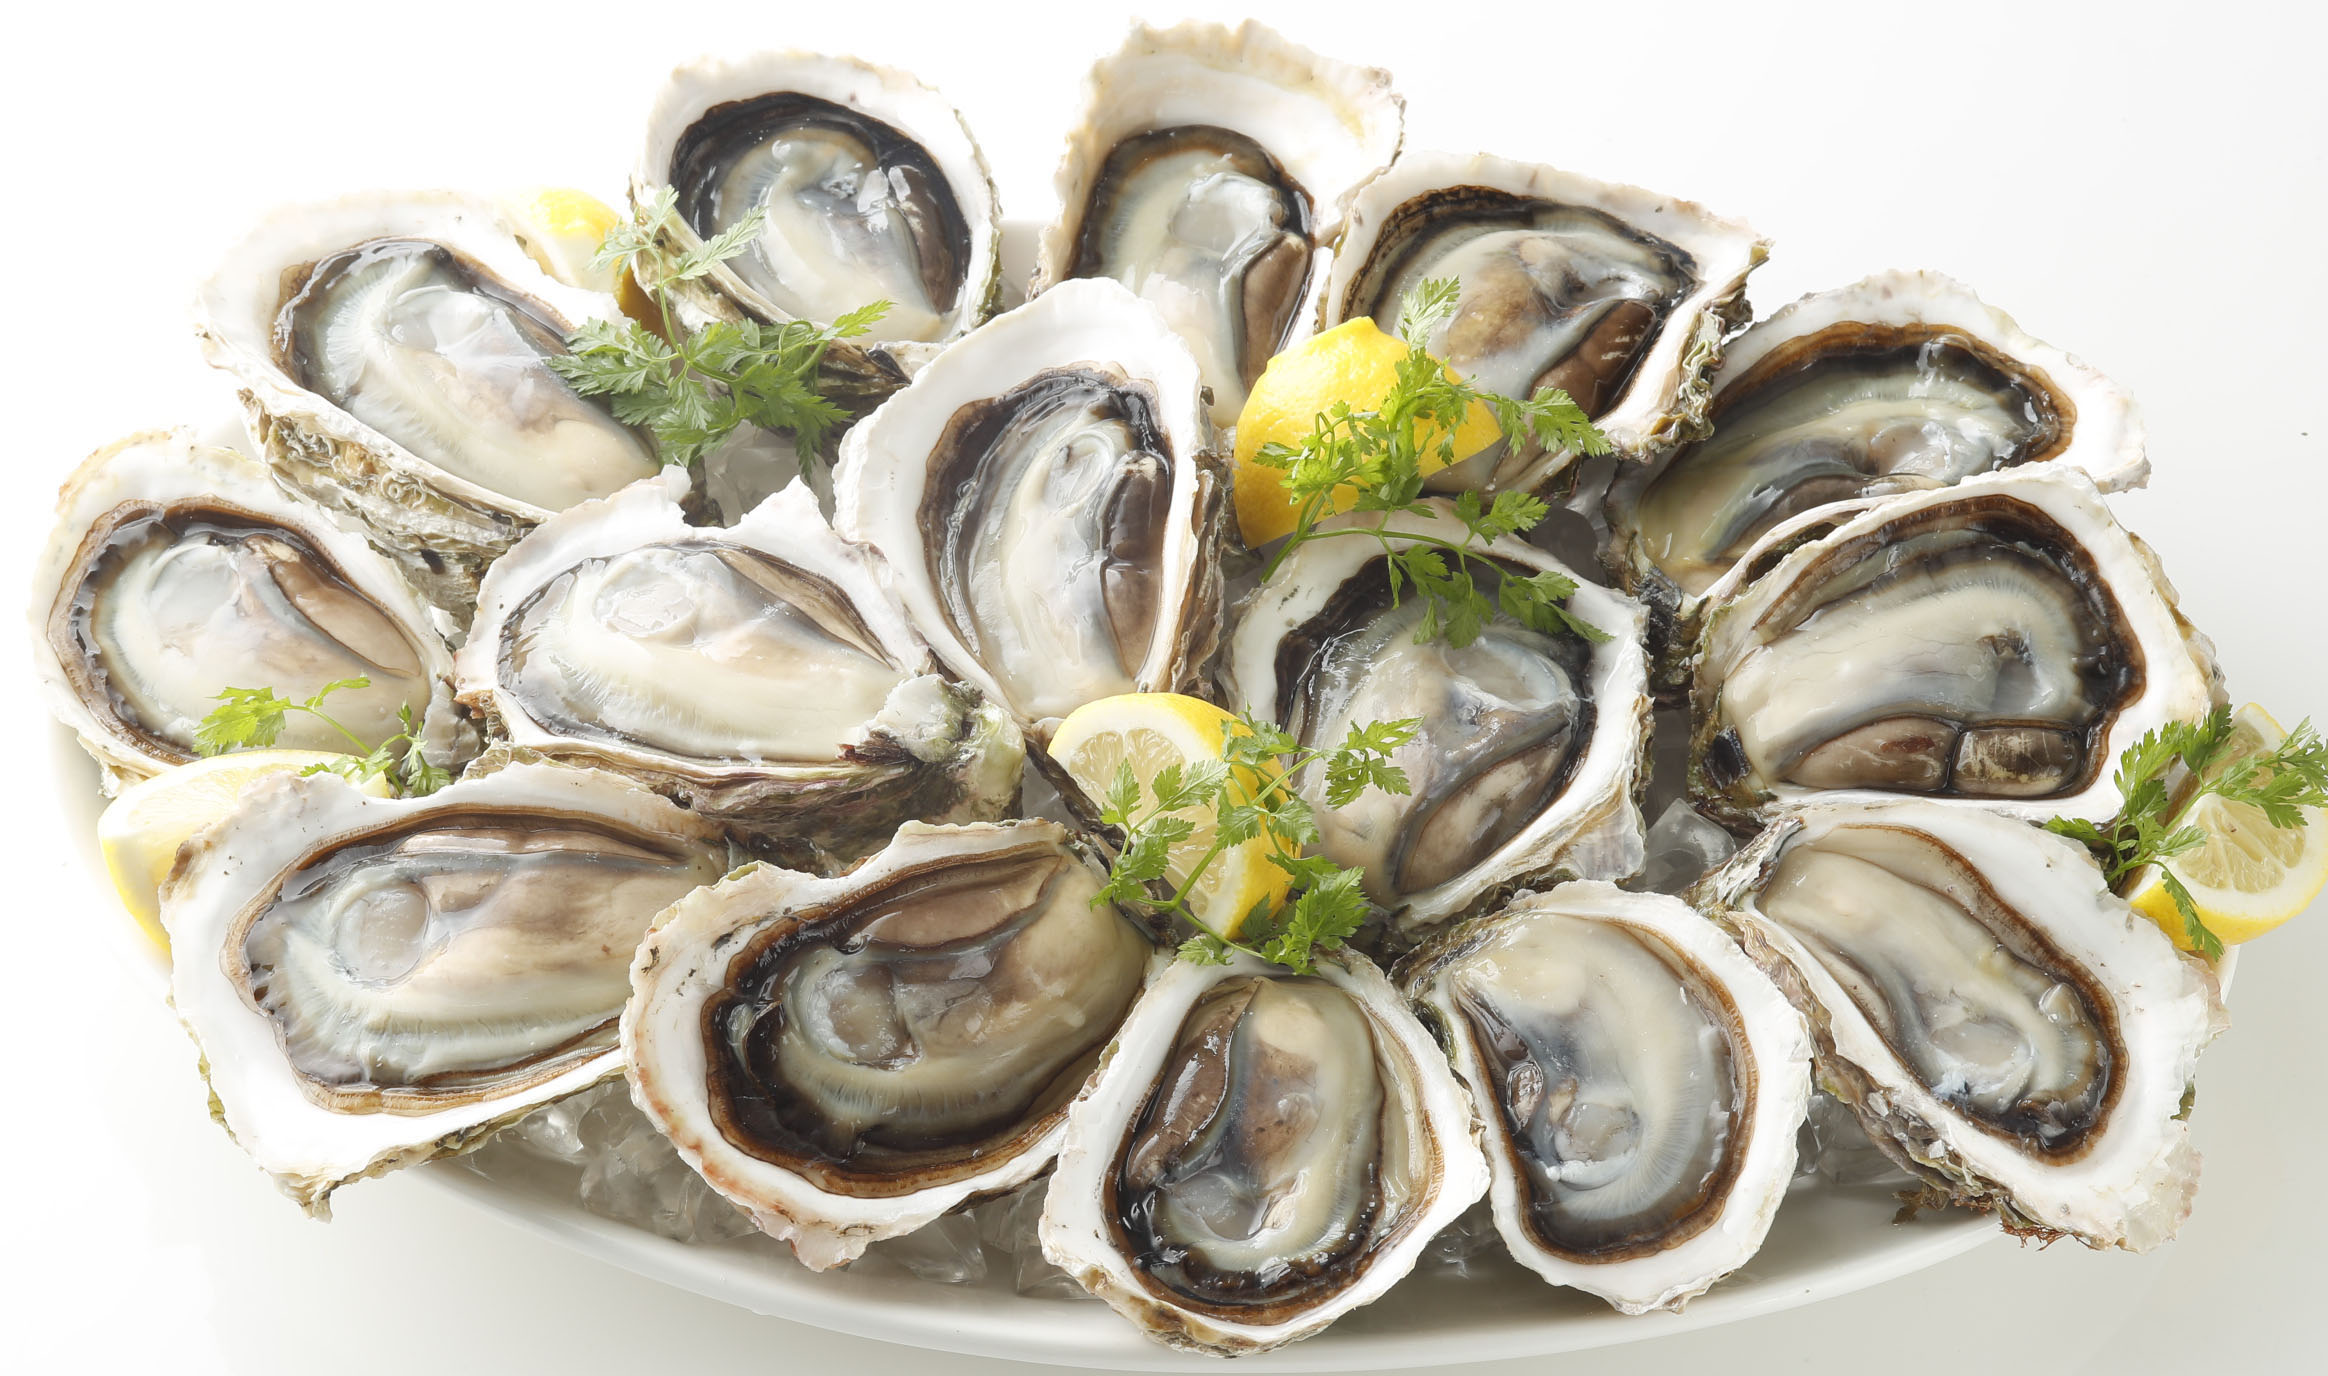 旬を迎える岩牡蠣を満喫しよう 6月9日 ロック 岩 の日 は ゼネラル オイスターの岩牡蠣の日 株式会社ゼネラル オイスターのプレスリリース